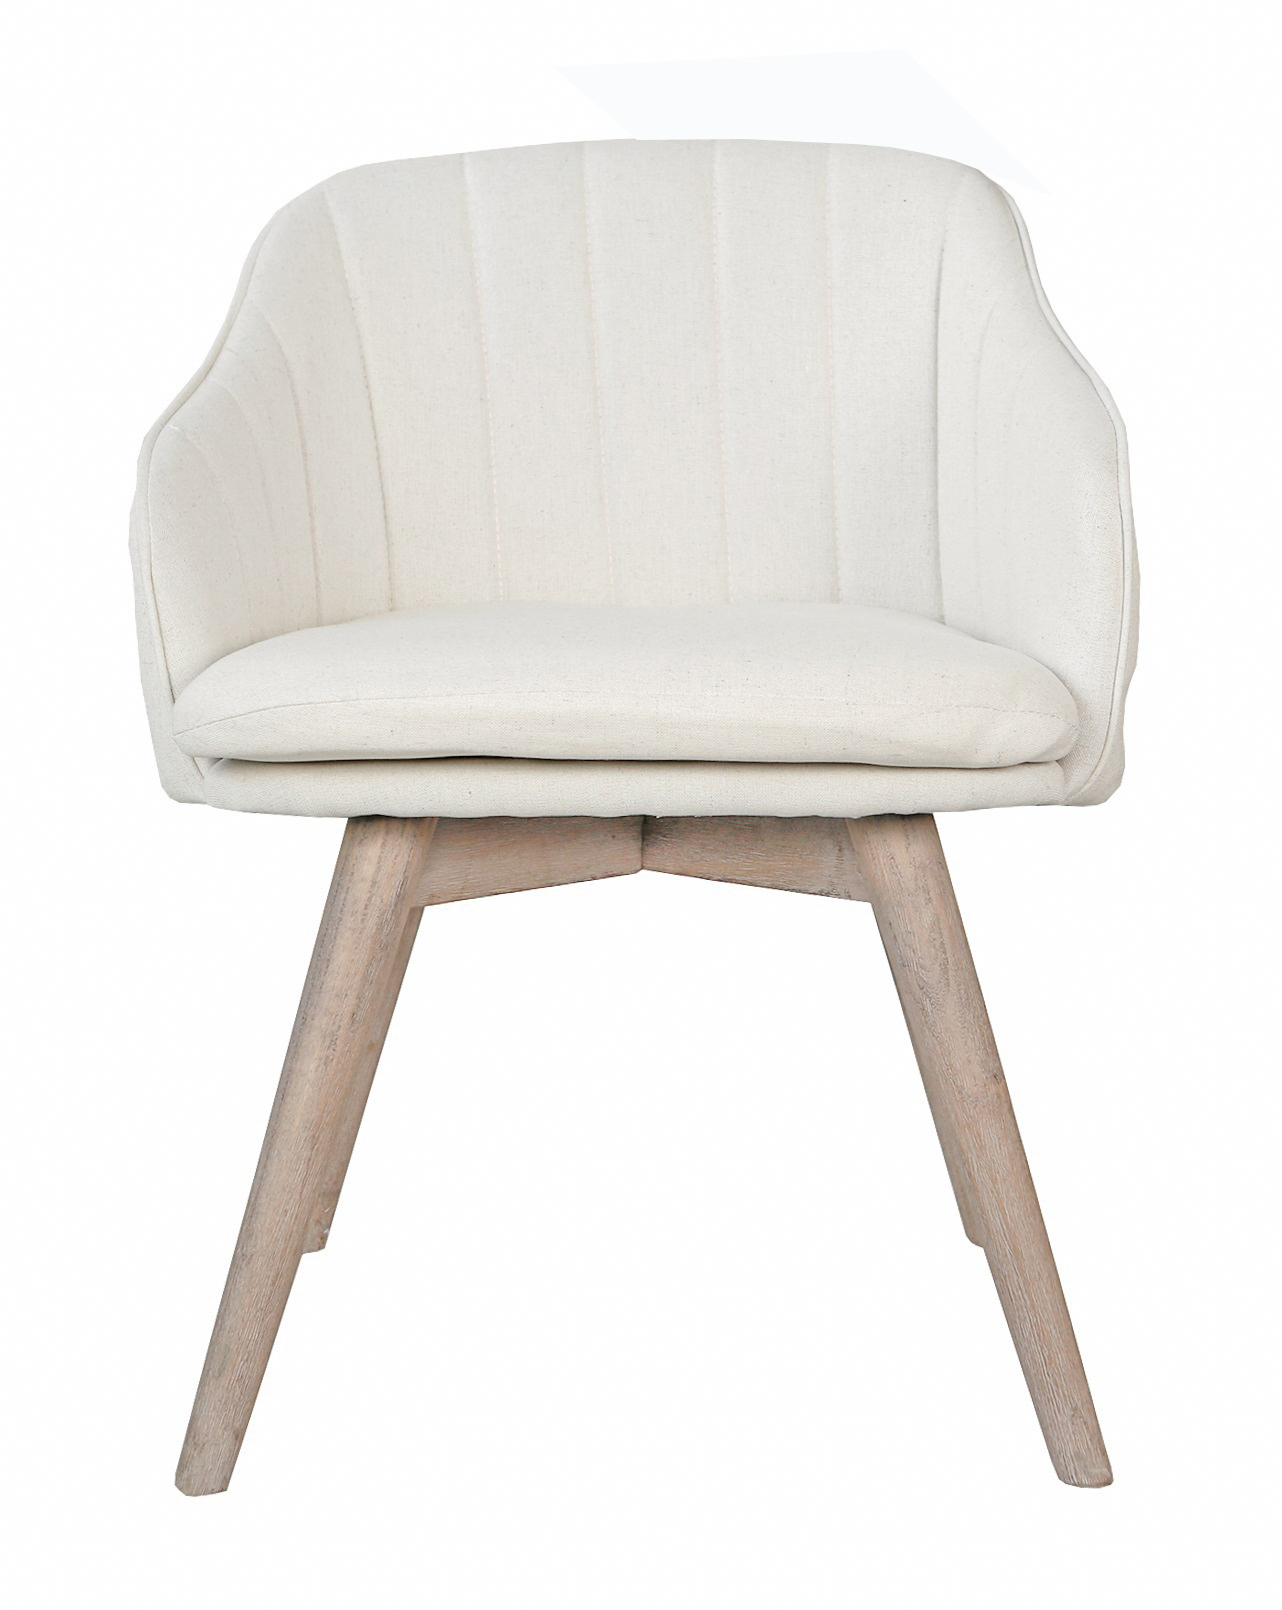 Интерьерные стулья Aqua wood beige